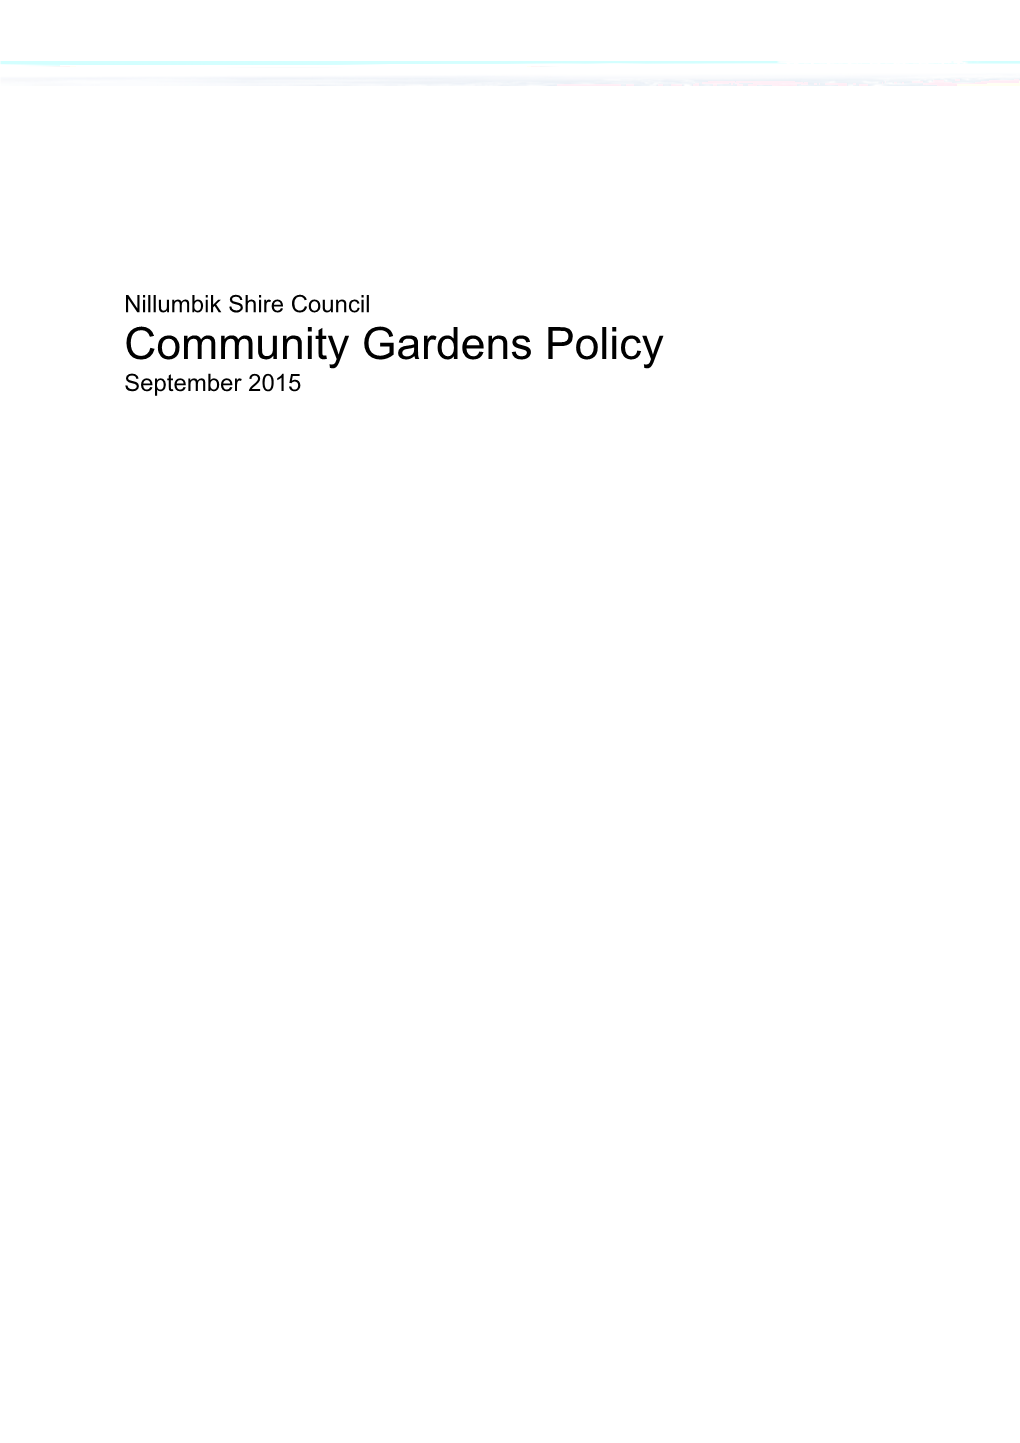 Nillumbik Community Garden Policy